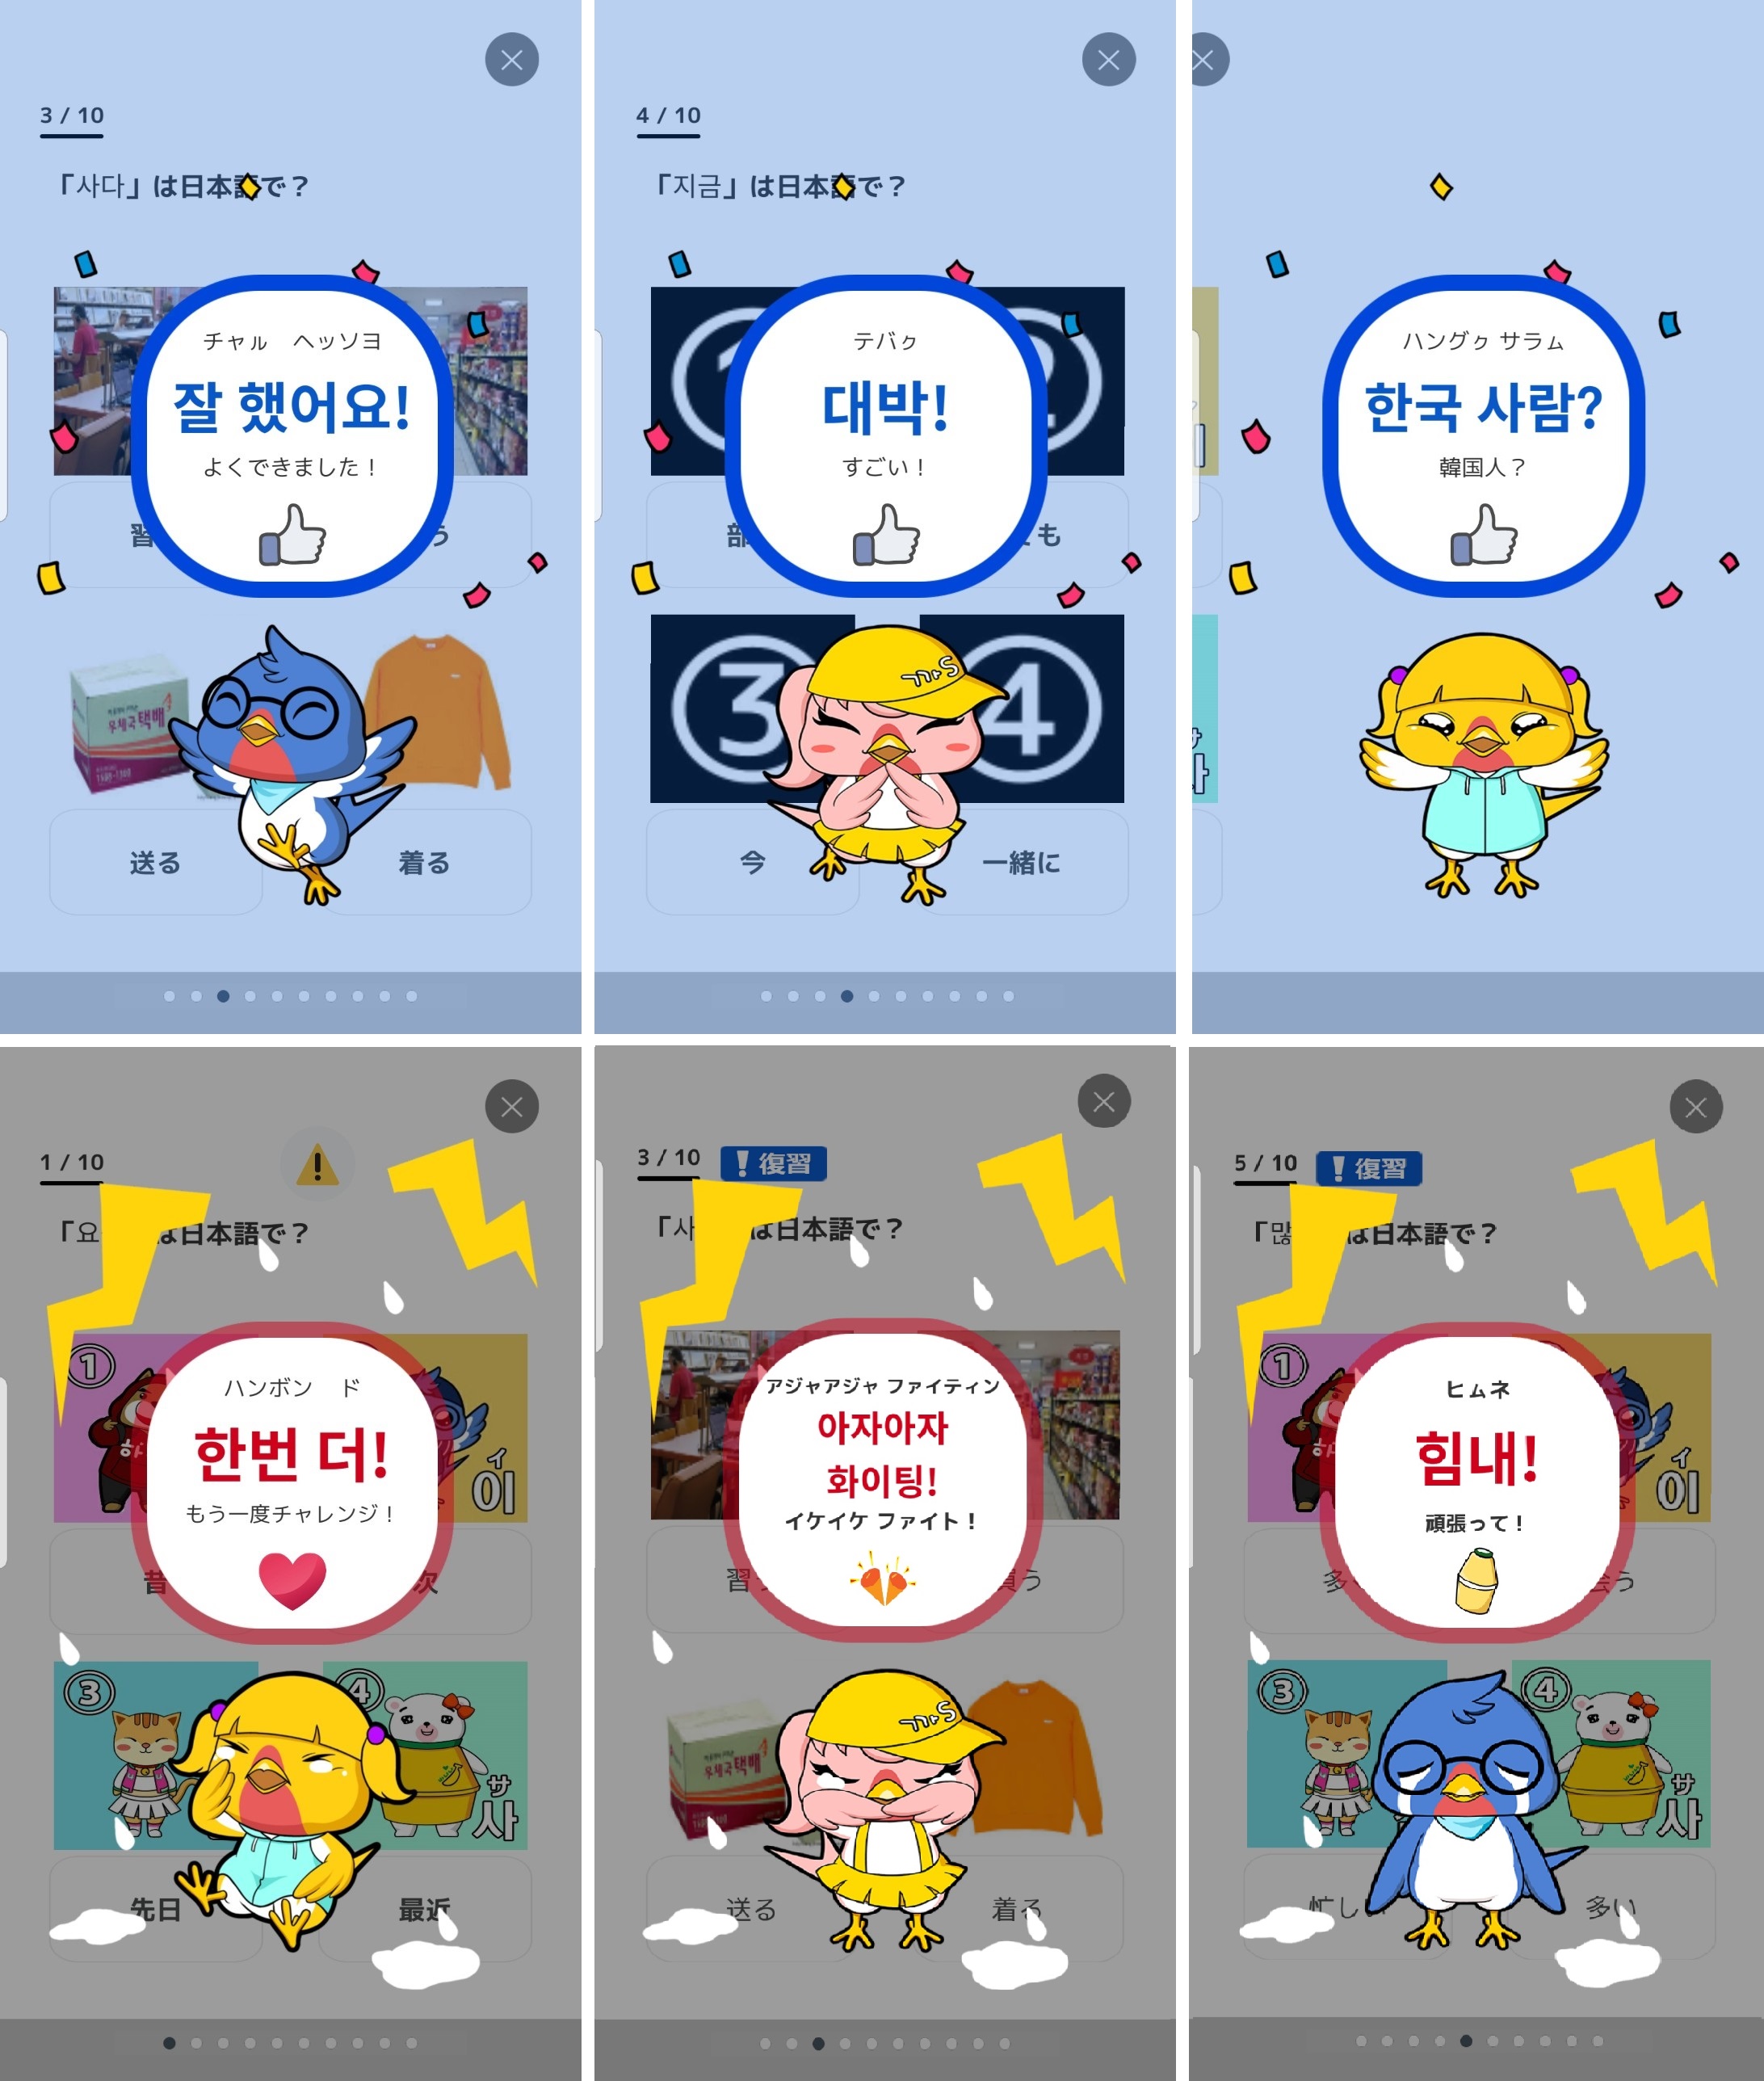 韓国語学習アプリ できちゃった韓国語 褒め言葉 や 復習機能 などが追加された大型アップデートを実施 クリエイターズステーション